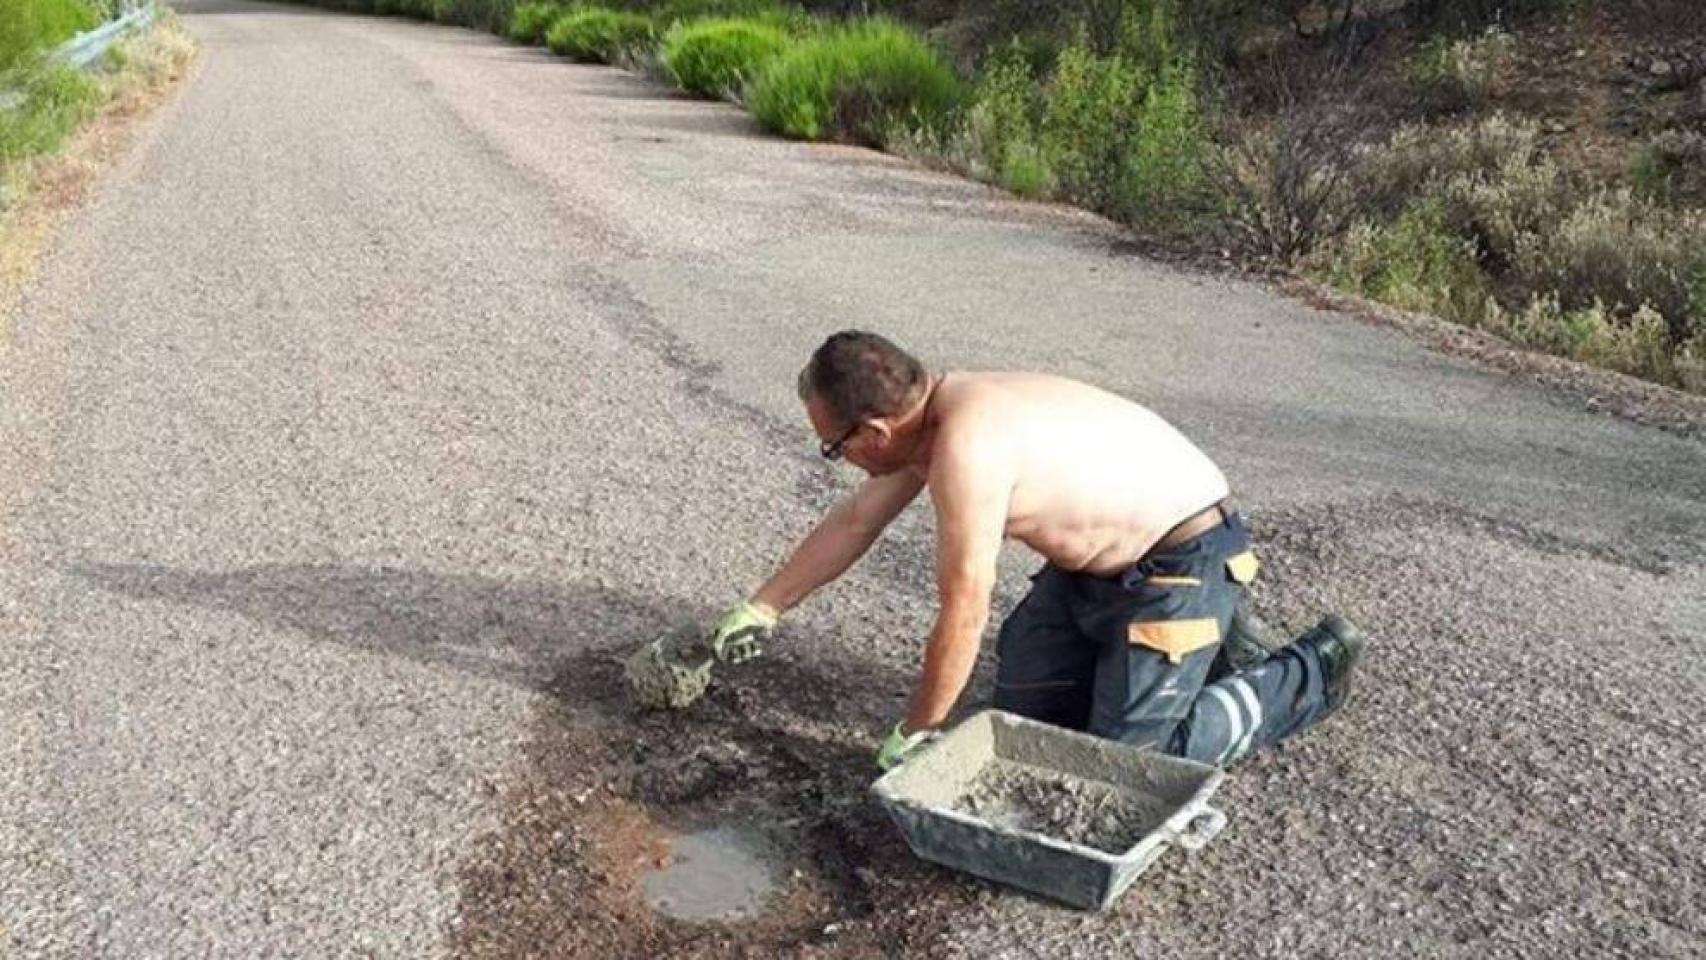 Enrique Galán arreglando el bache de la carretera de Robledillo